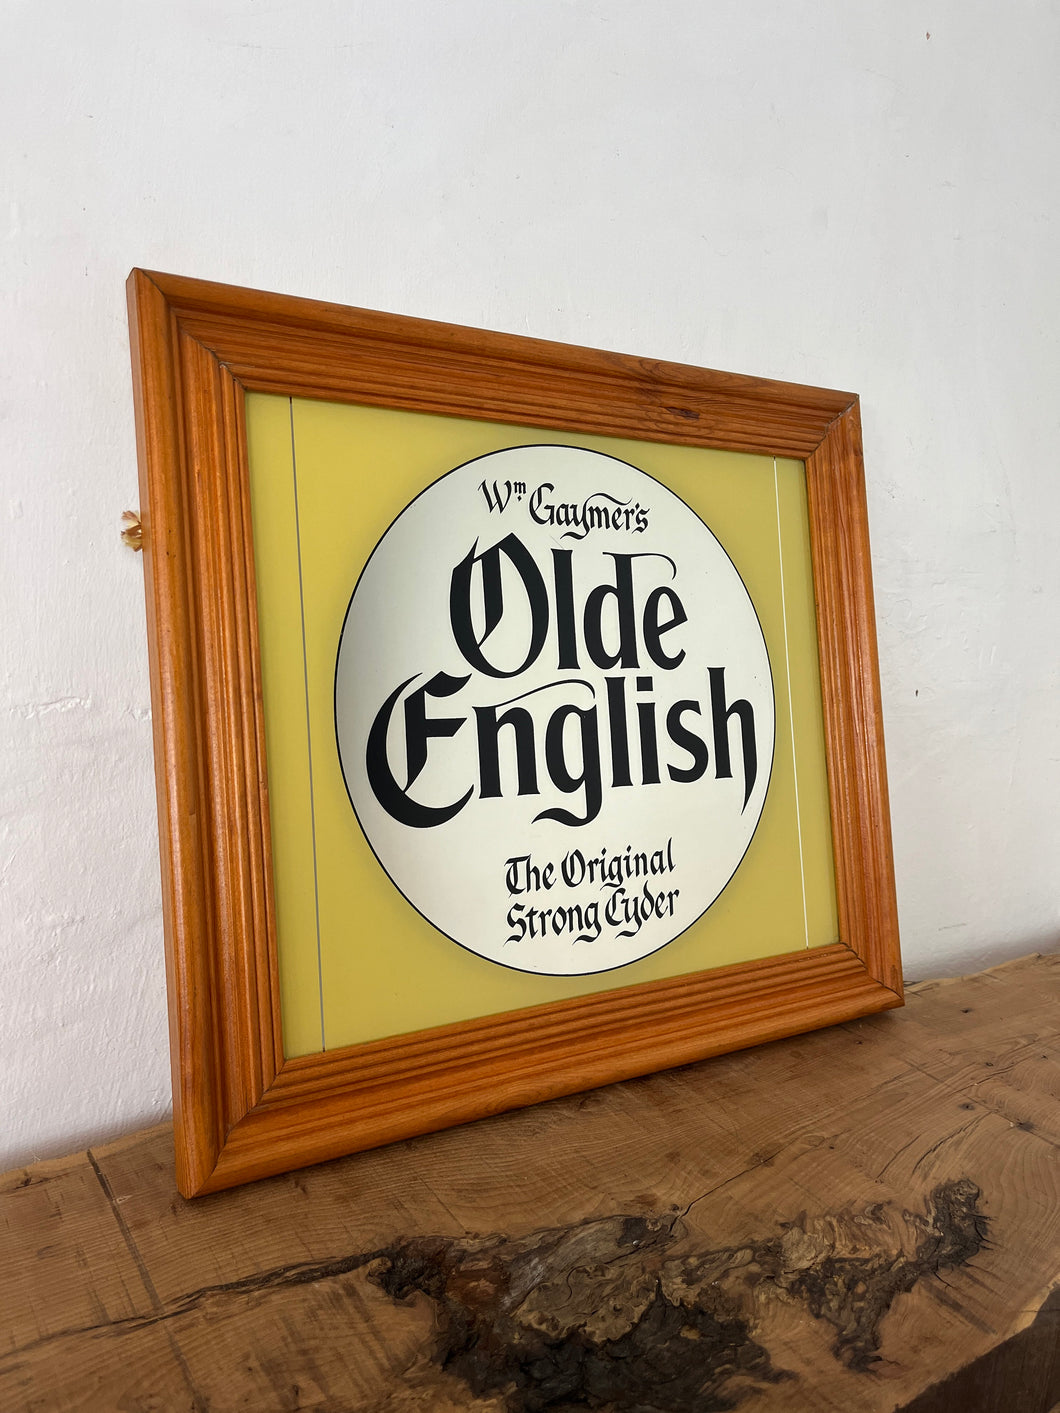 Wm Gaymer’s Old English Cider Cyder mirror, advertising, wall art, man cave, she shed, brewery, bar, pub memorabilia